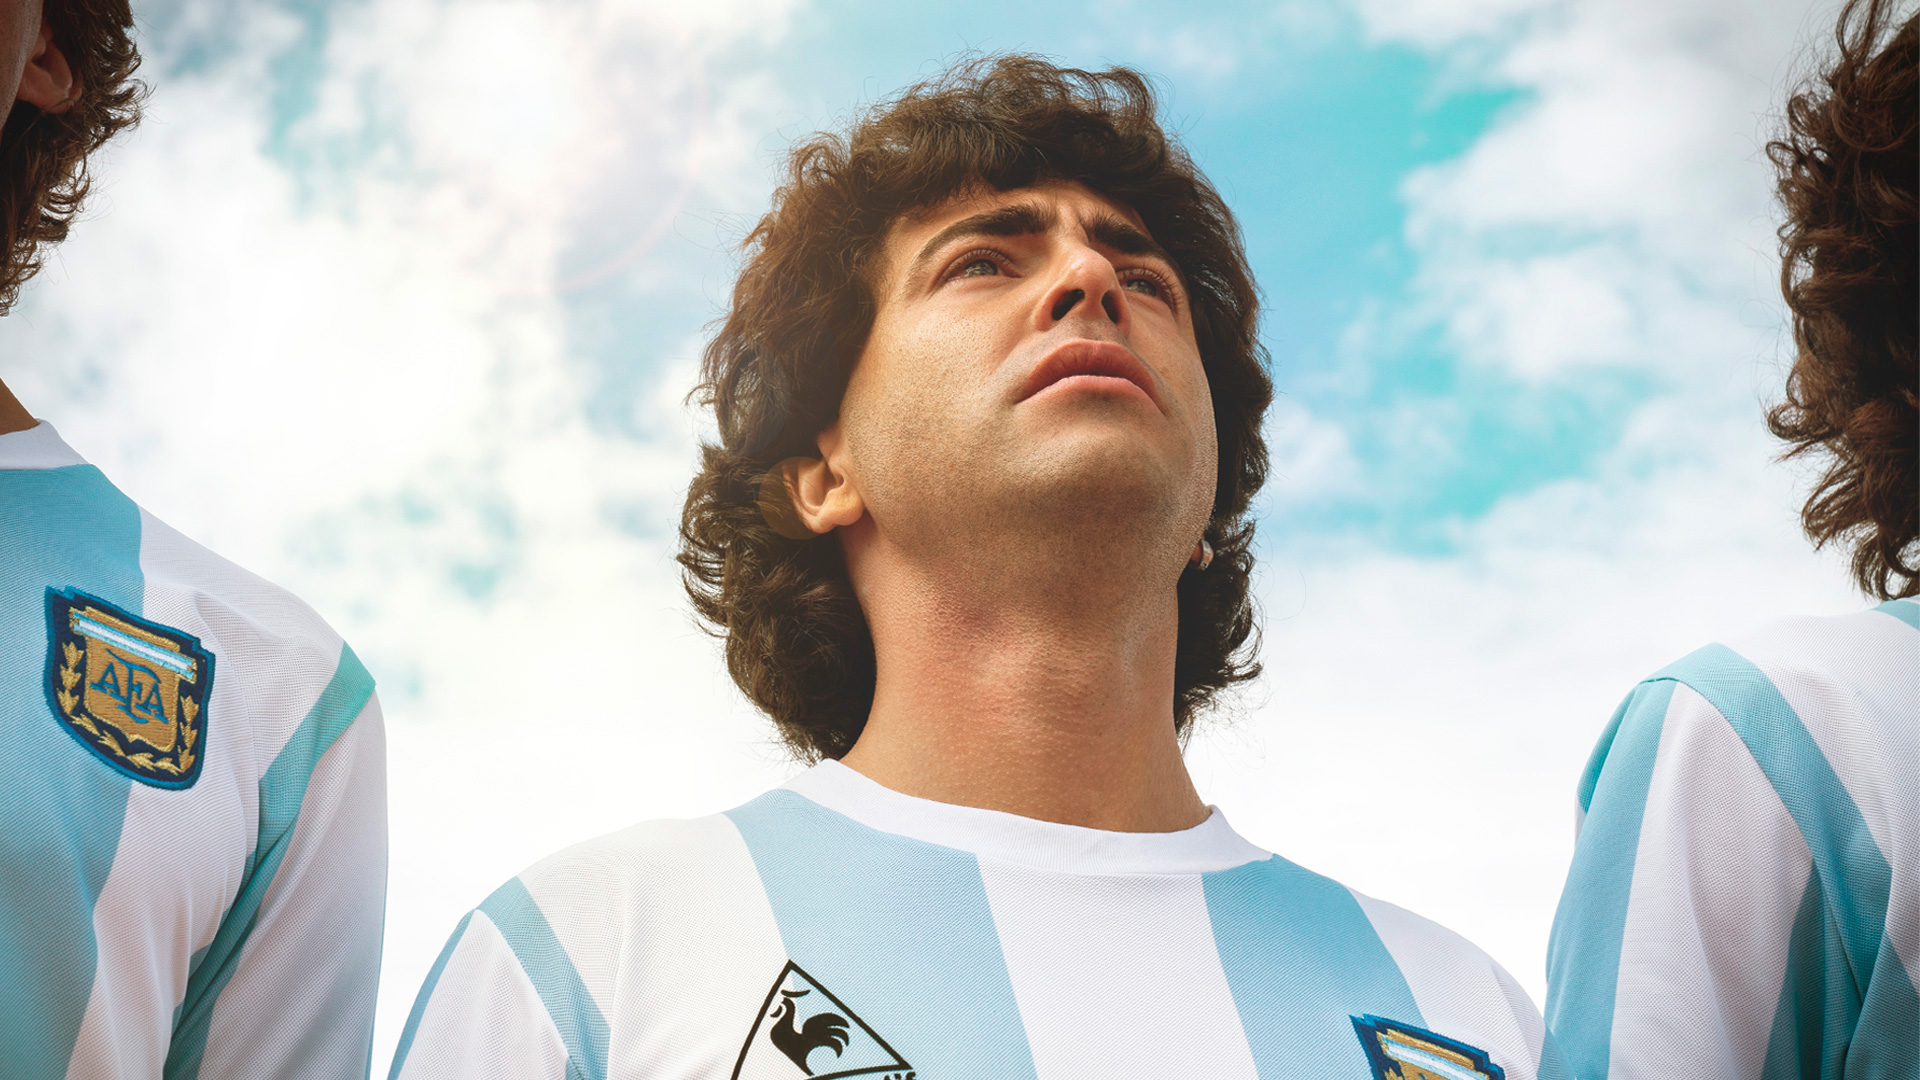 Sueño Bendito: la gran responsabilidad de interpretar a un ídolo como Diego  Maradona - Infobae